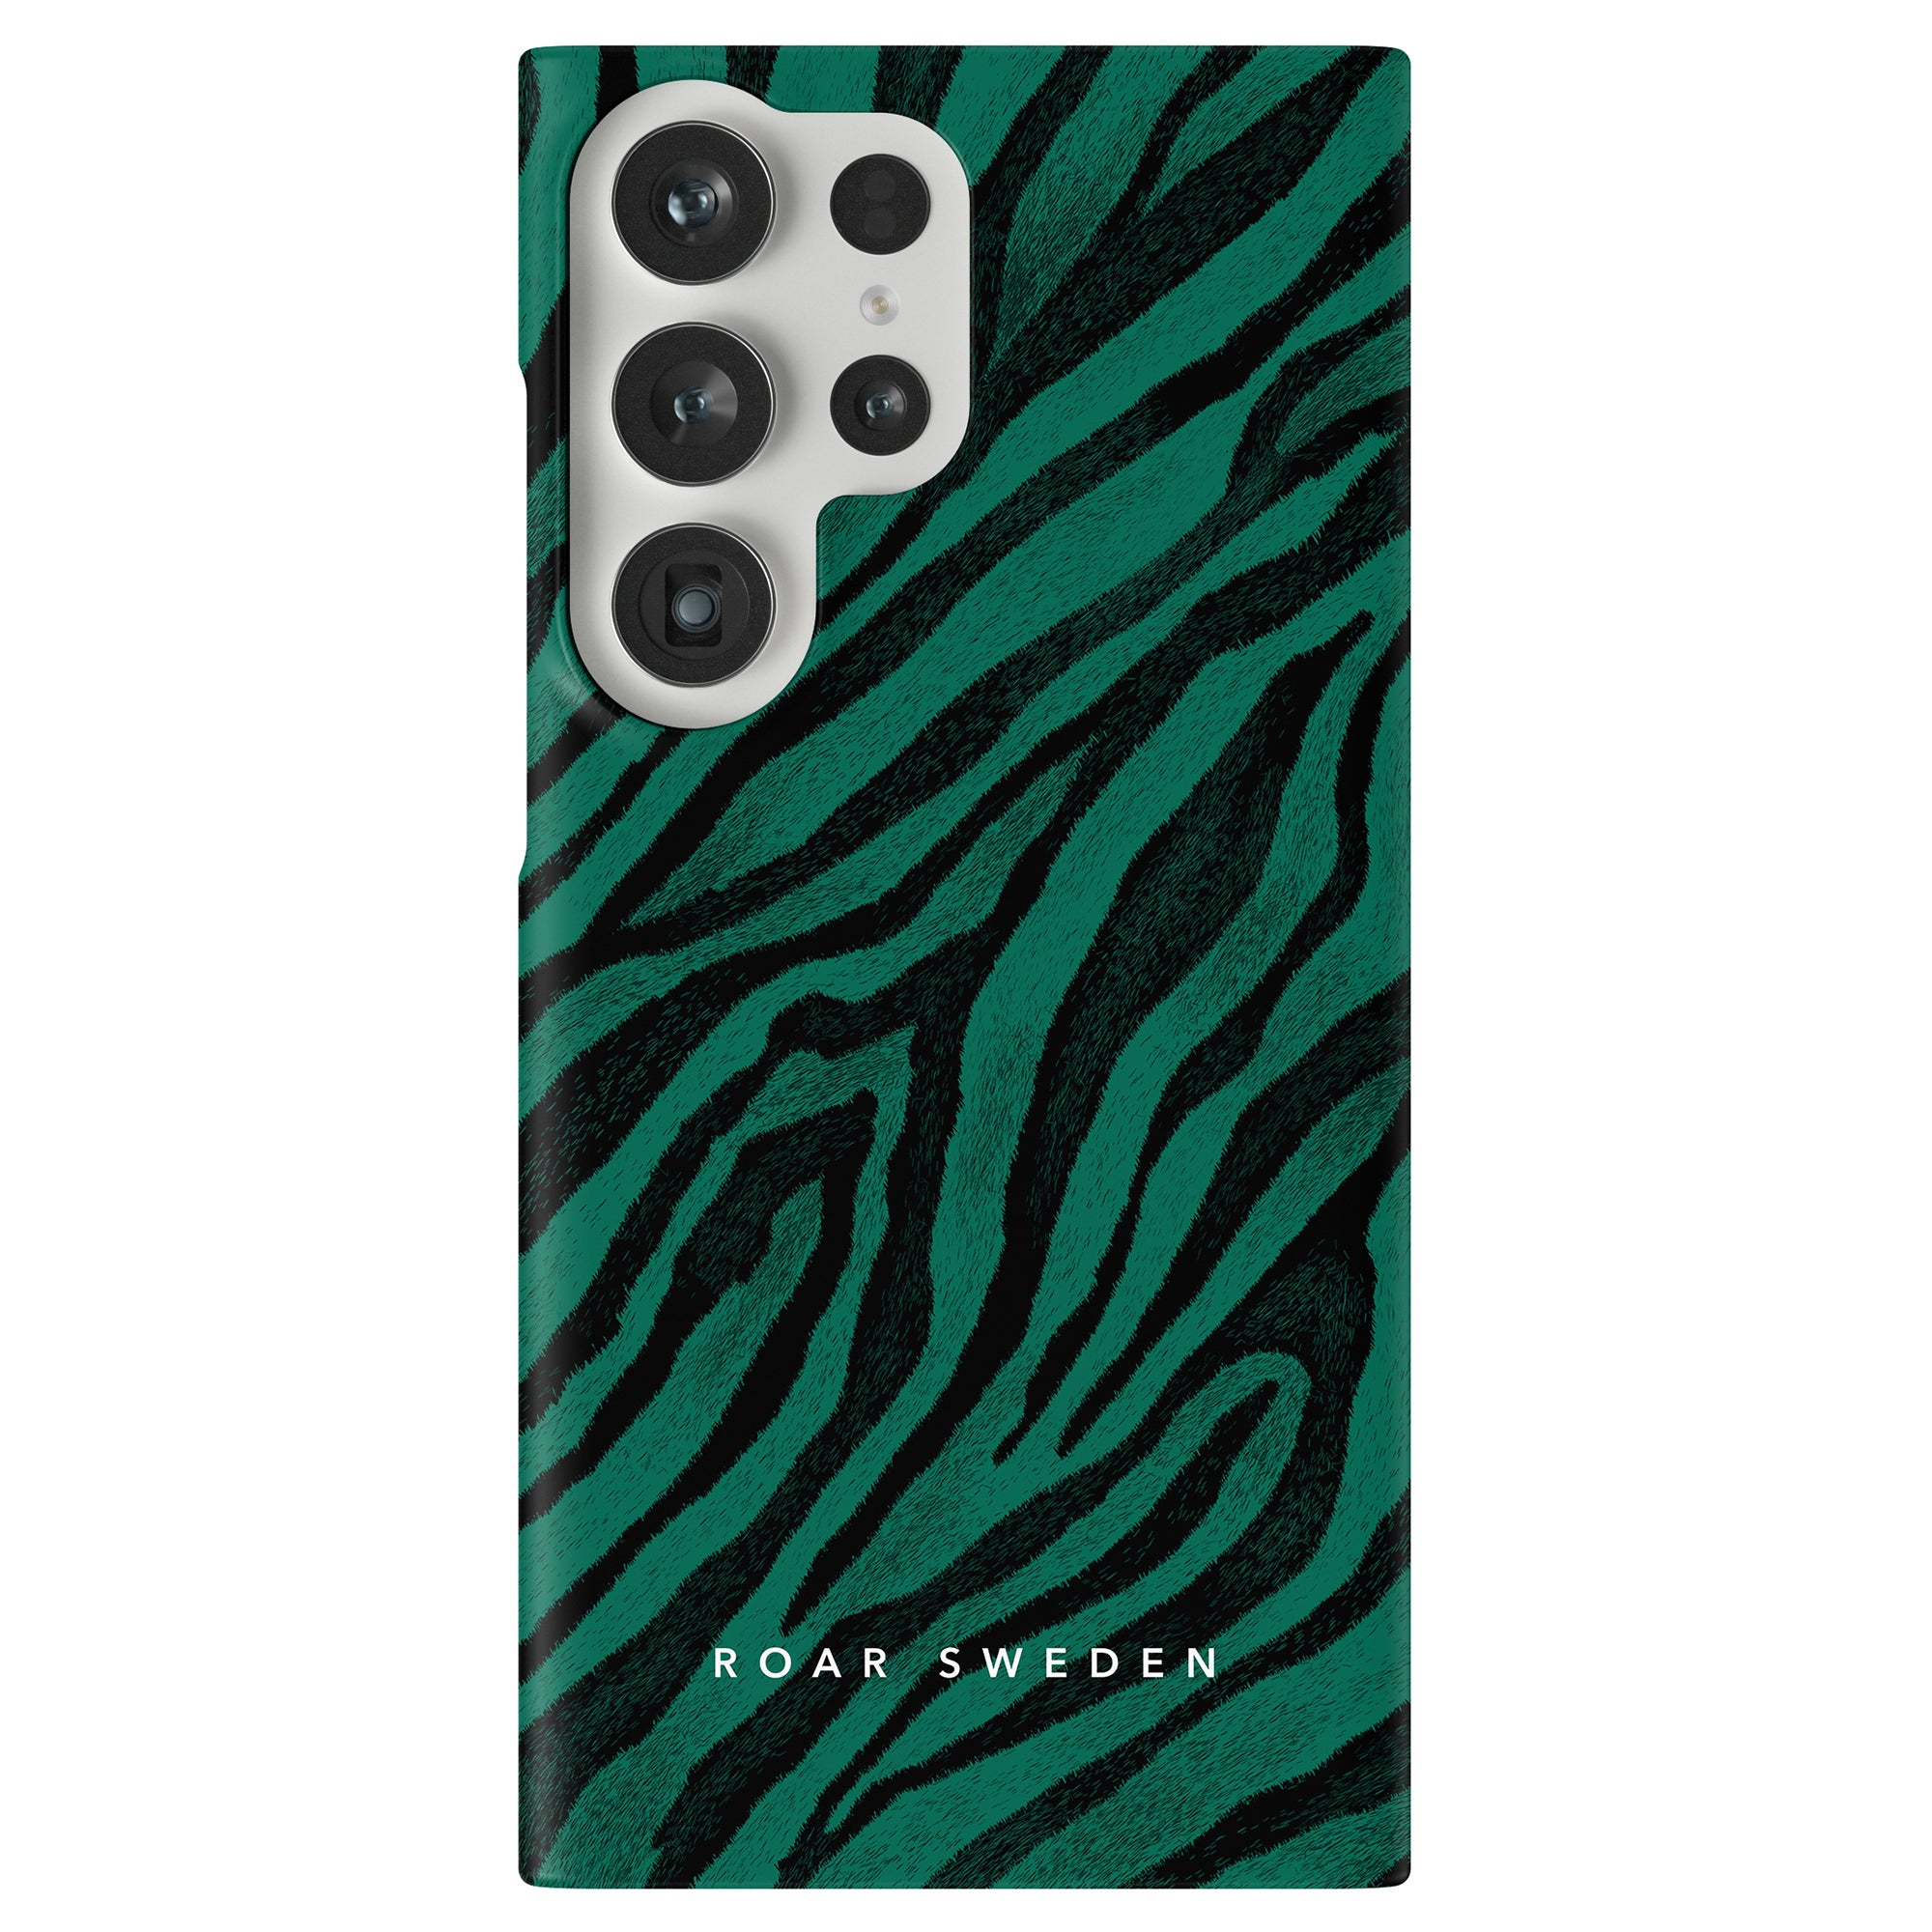 En smaragdgrön nyans och djärva svarta streck zebratryck Nala - Slim Case för iPhone 11 Pro.